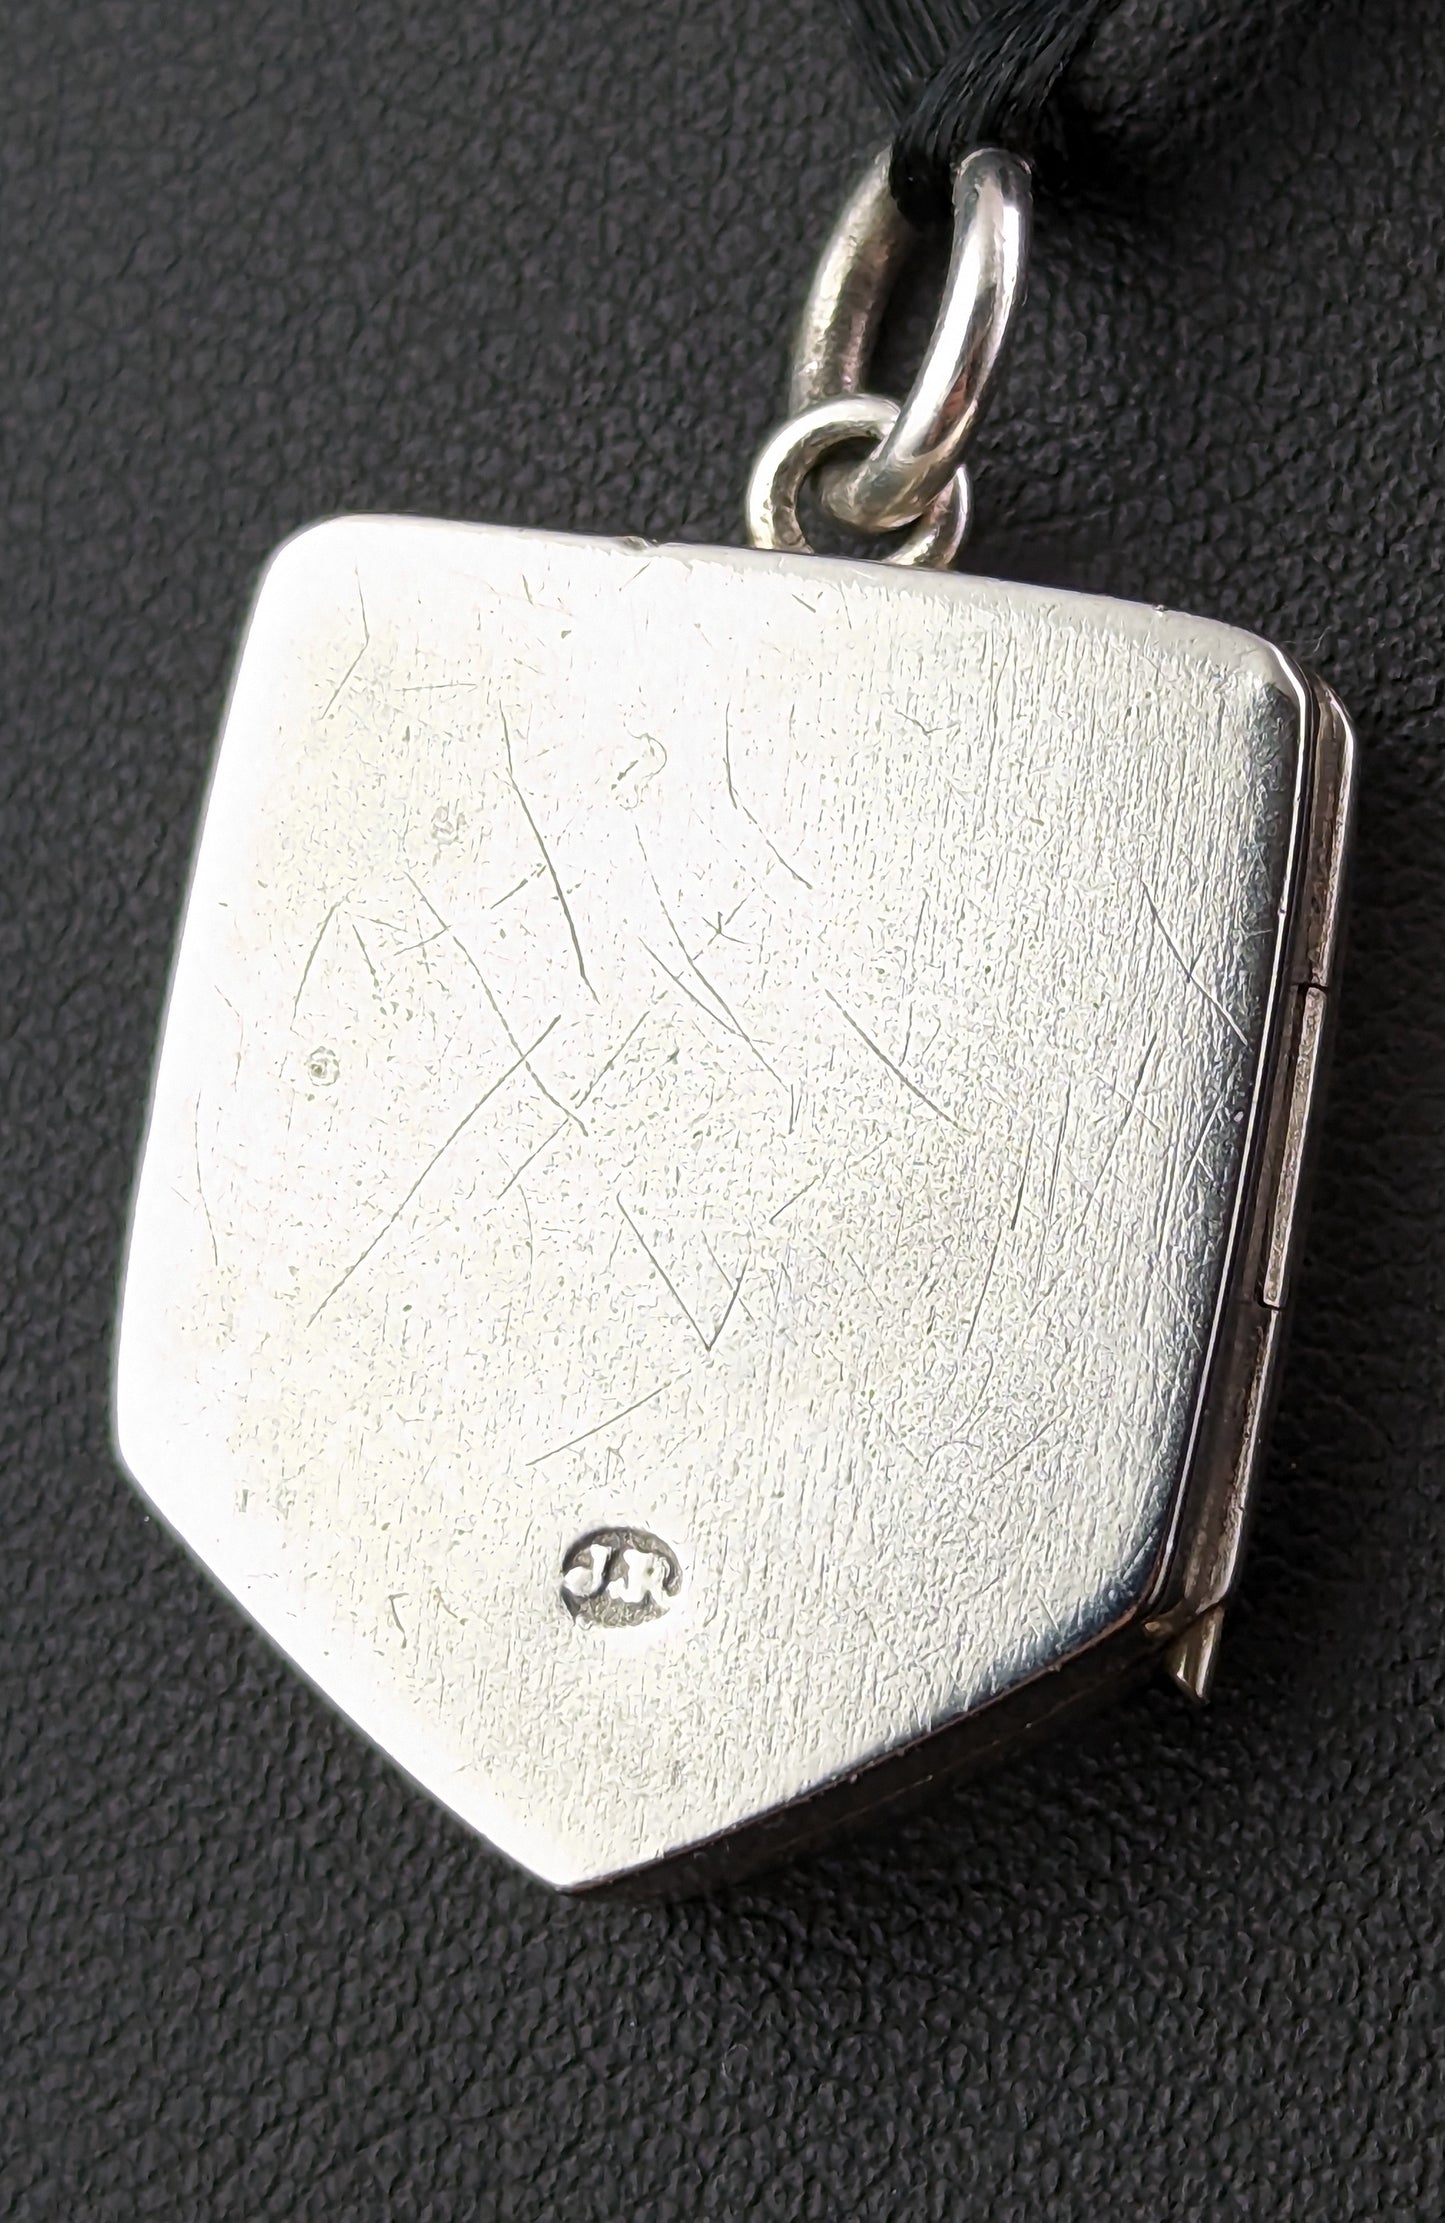 Antique silver locket pendant, Shield shaped, leaf engraved